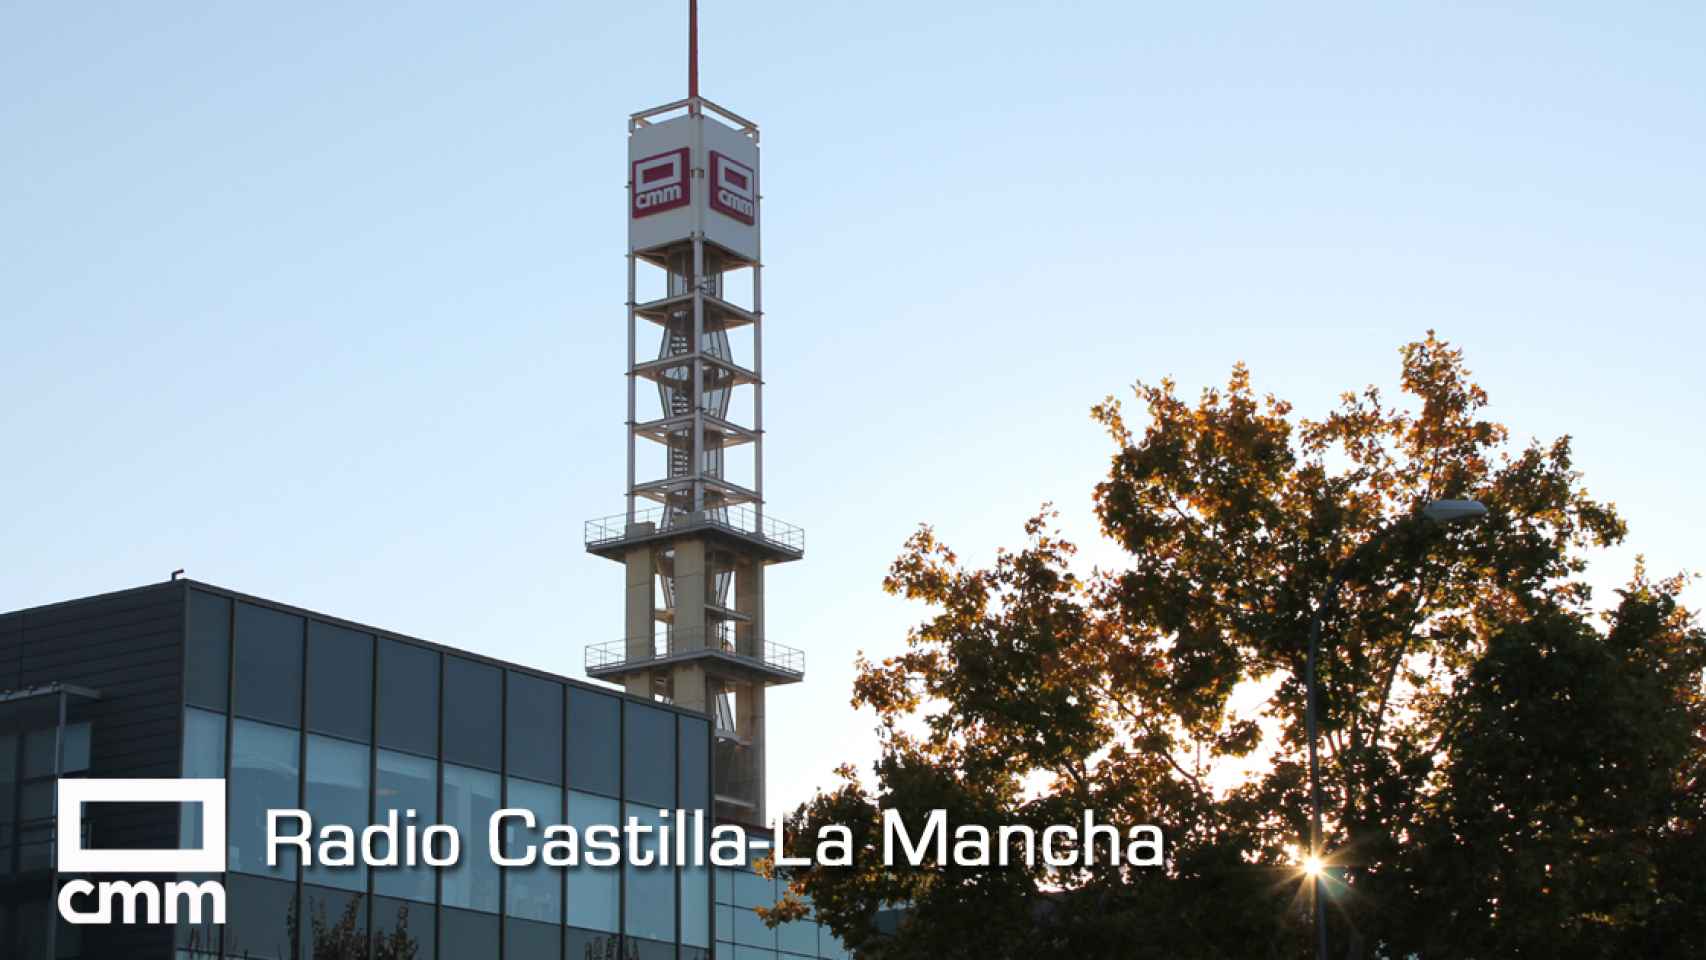 Lunes de estreno en Radio Castilla-La Mancha: nuevas sintonía, voces corporativas y programación